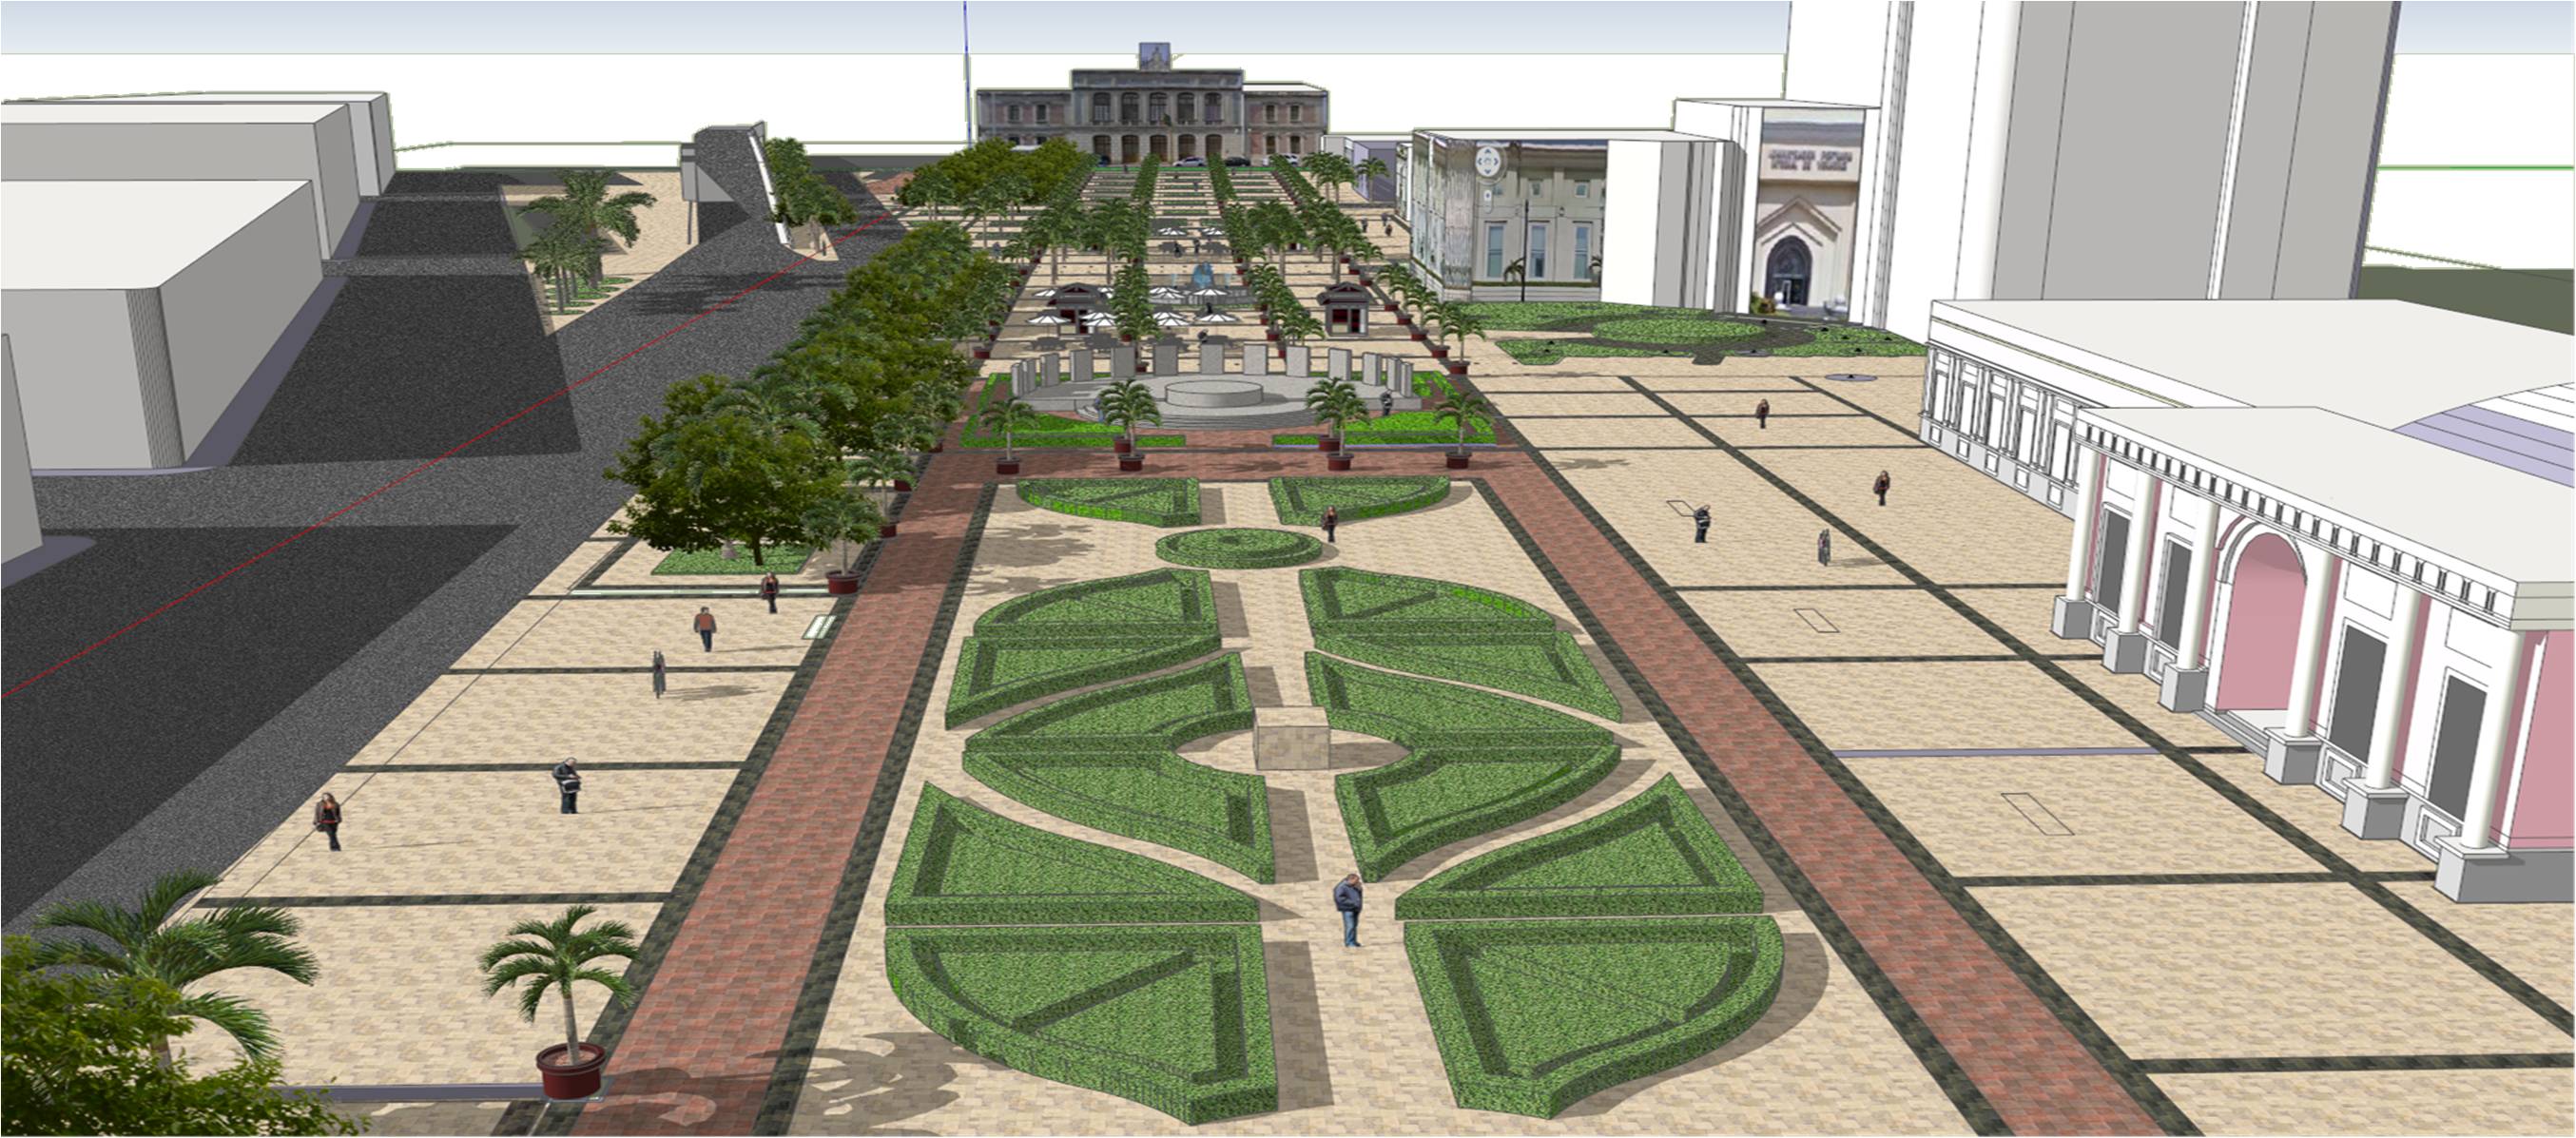 Continúa remodelación de la Plaza de la República pese a hallazgo de restos arqueológicos